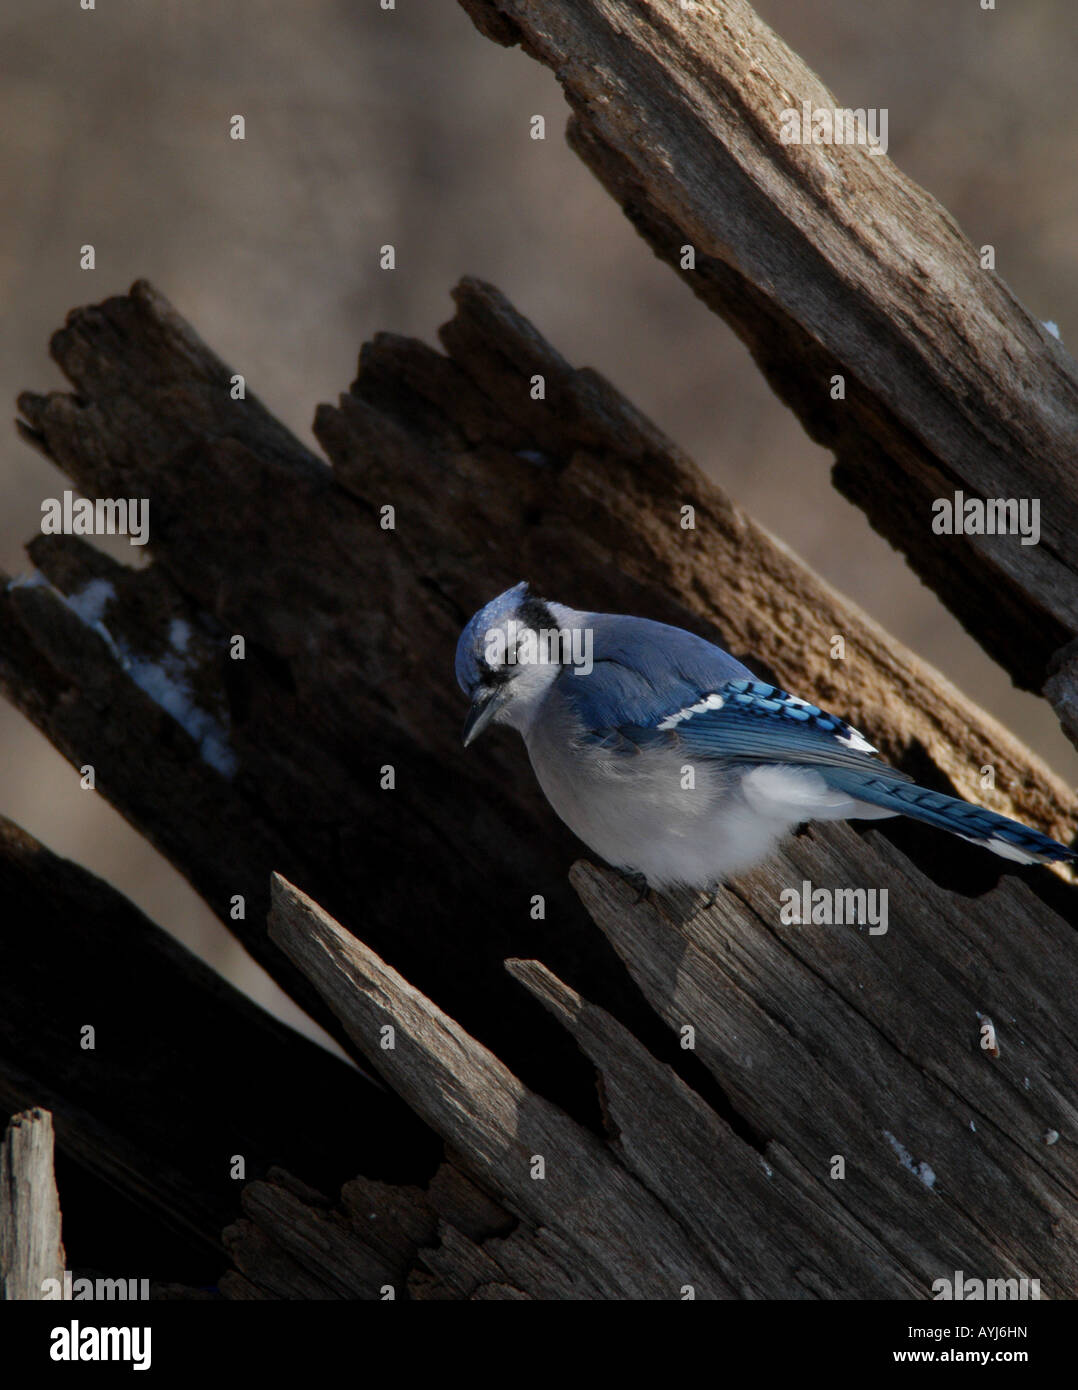 Geai bleu journal d'oiseaux colorés songbird moignon couleur Banque D'Images